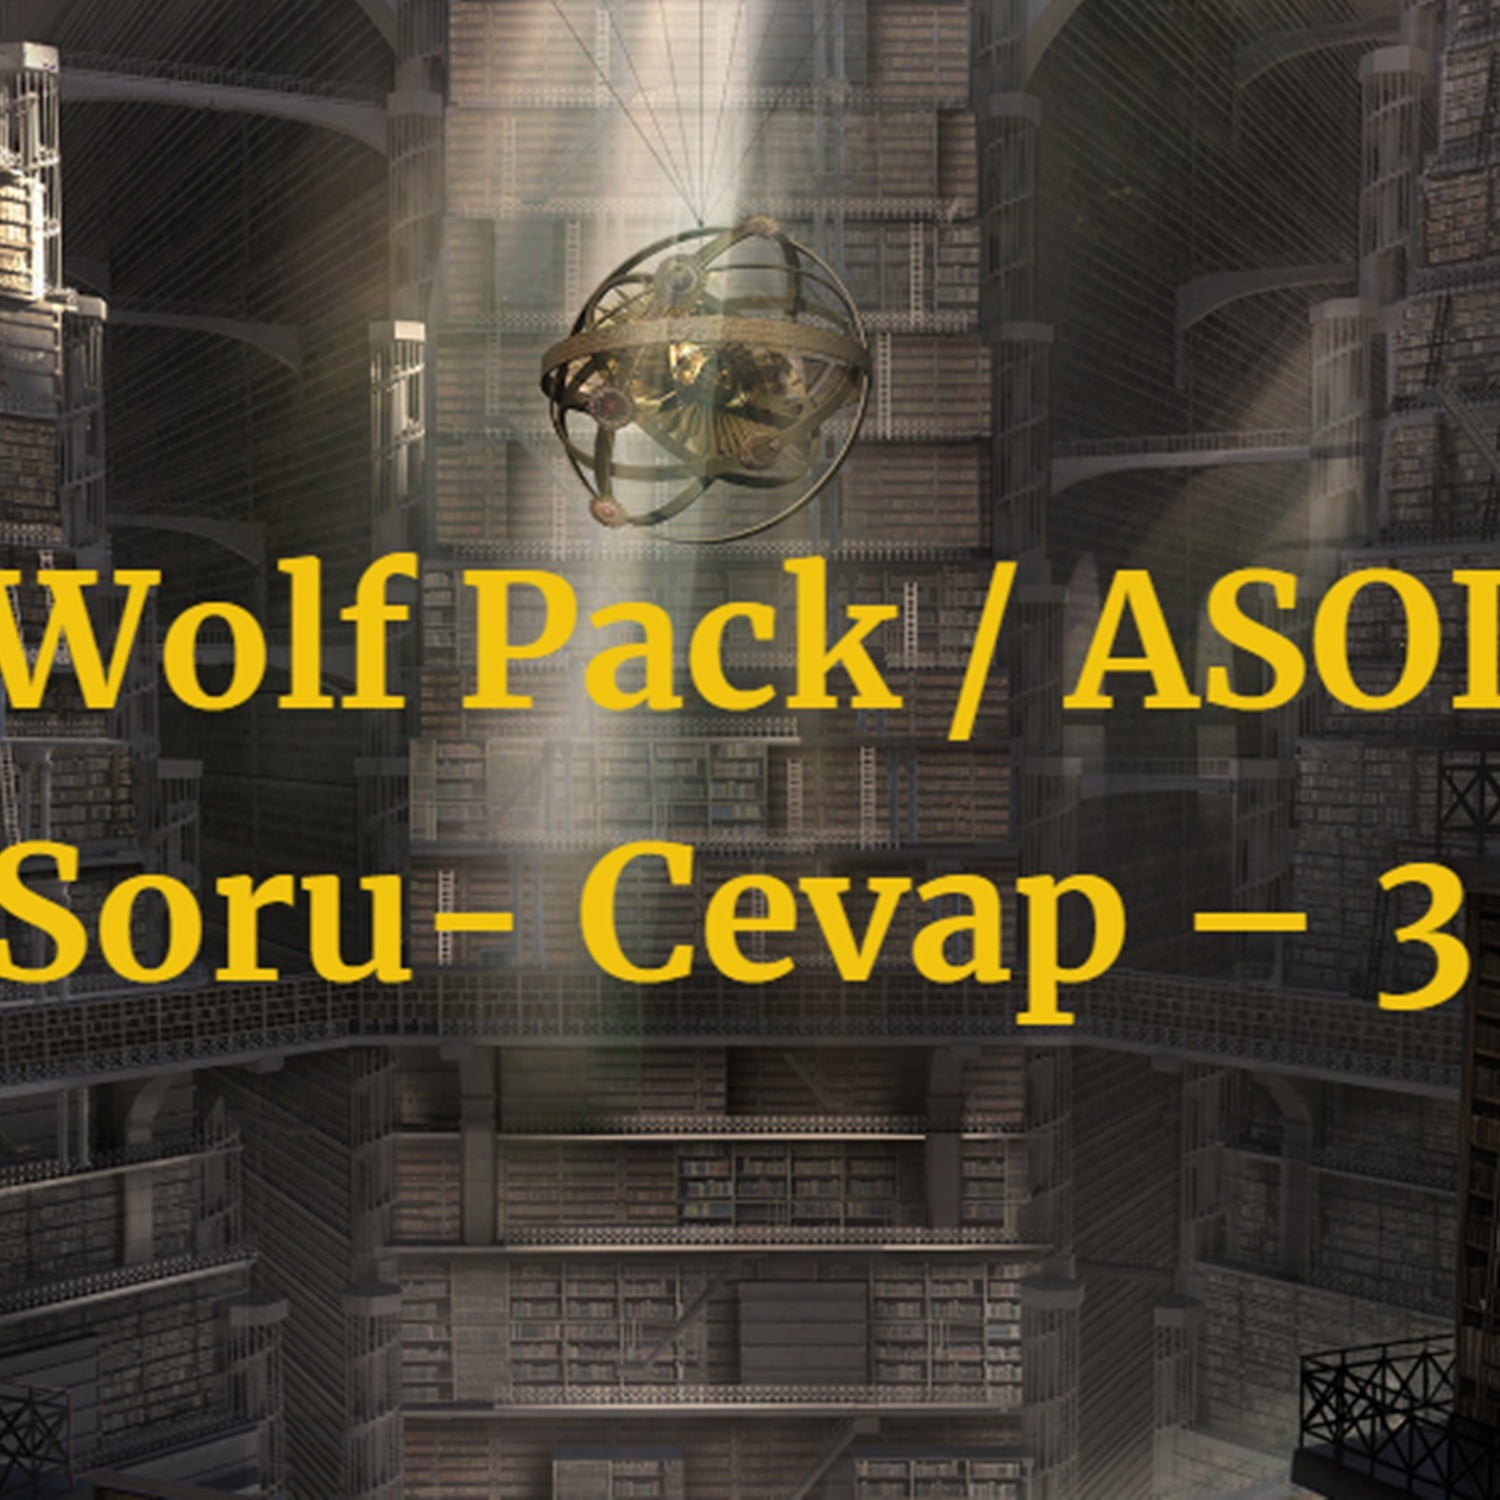 The Wolf Pack / ASOIAF / Soru- Cevap – 3